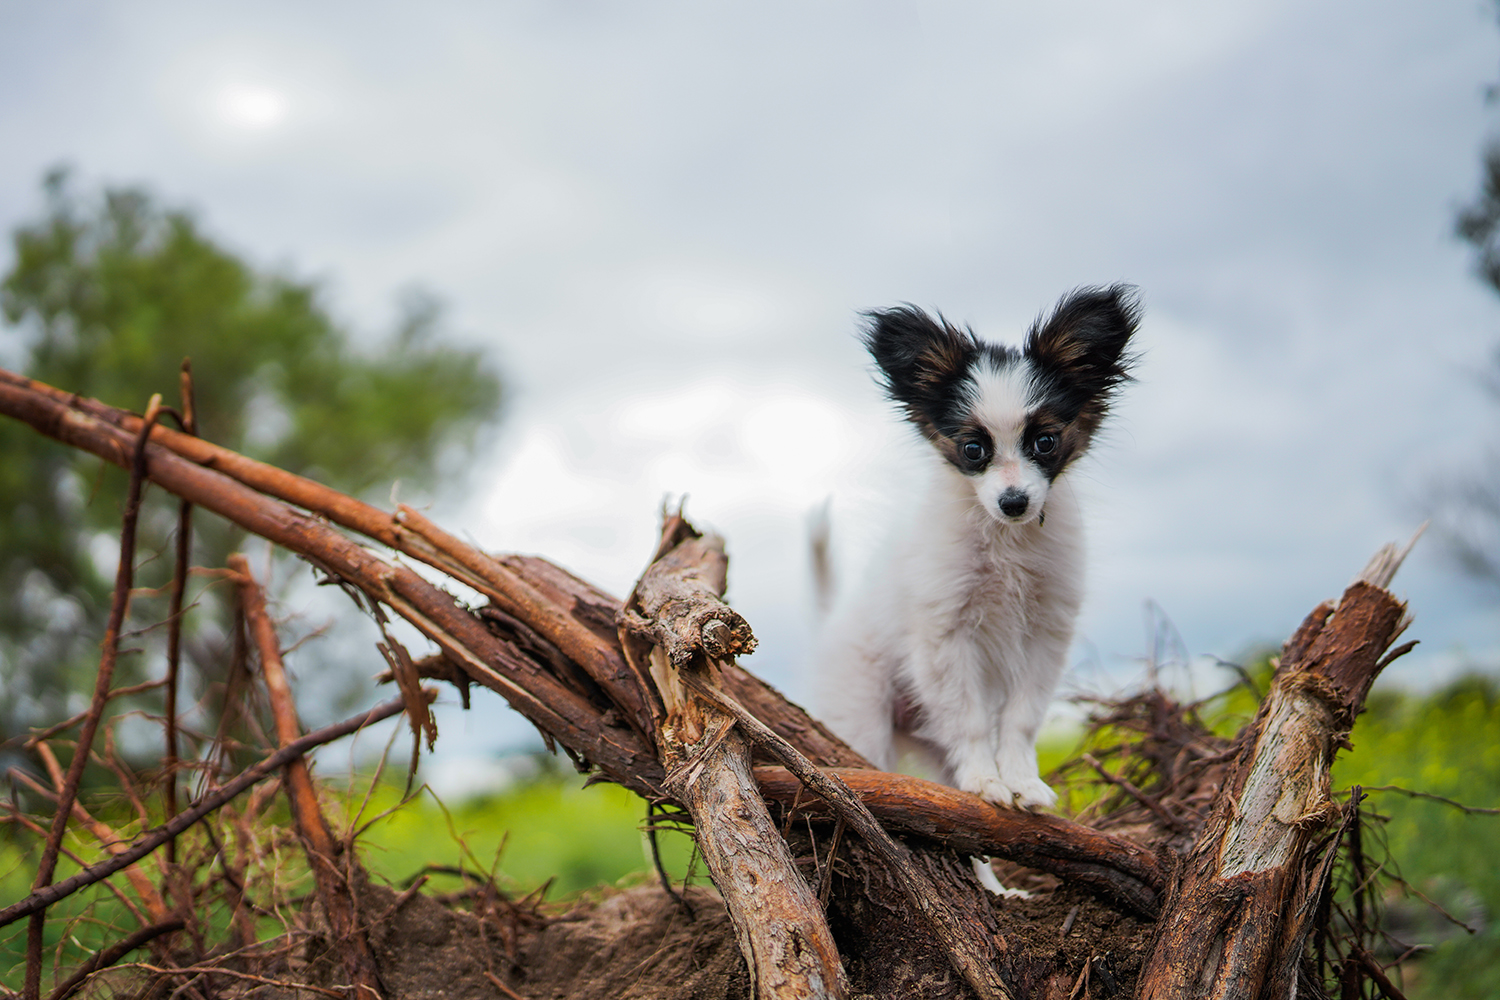 Cute dog on a fallen tree stump